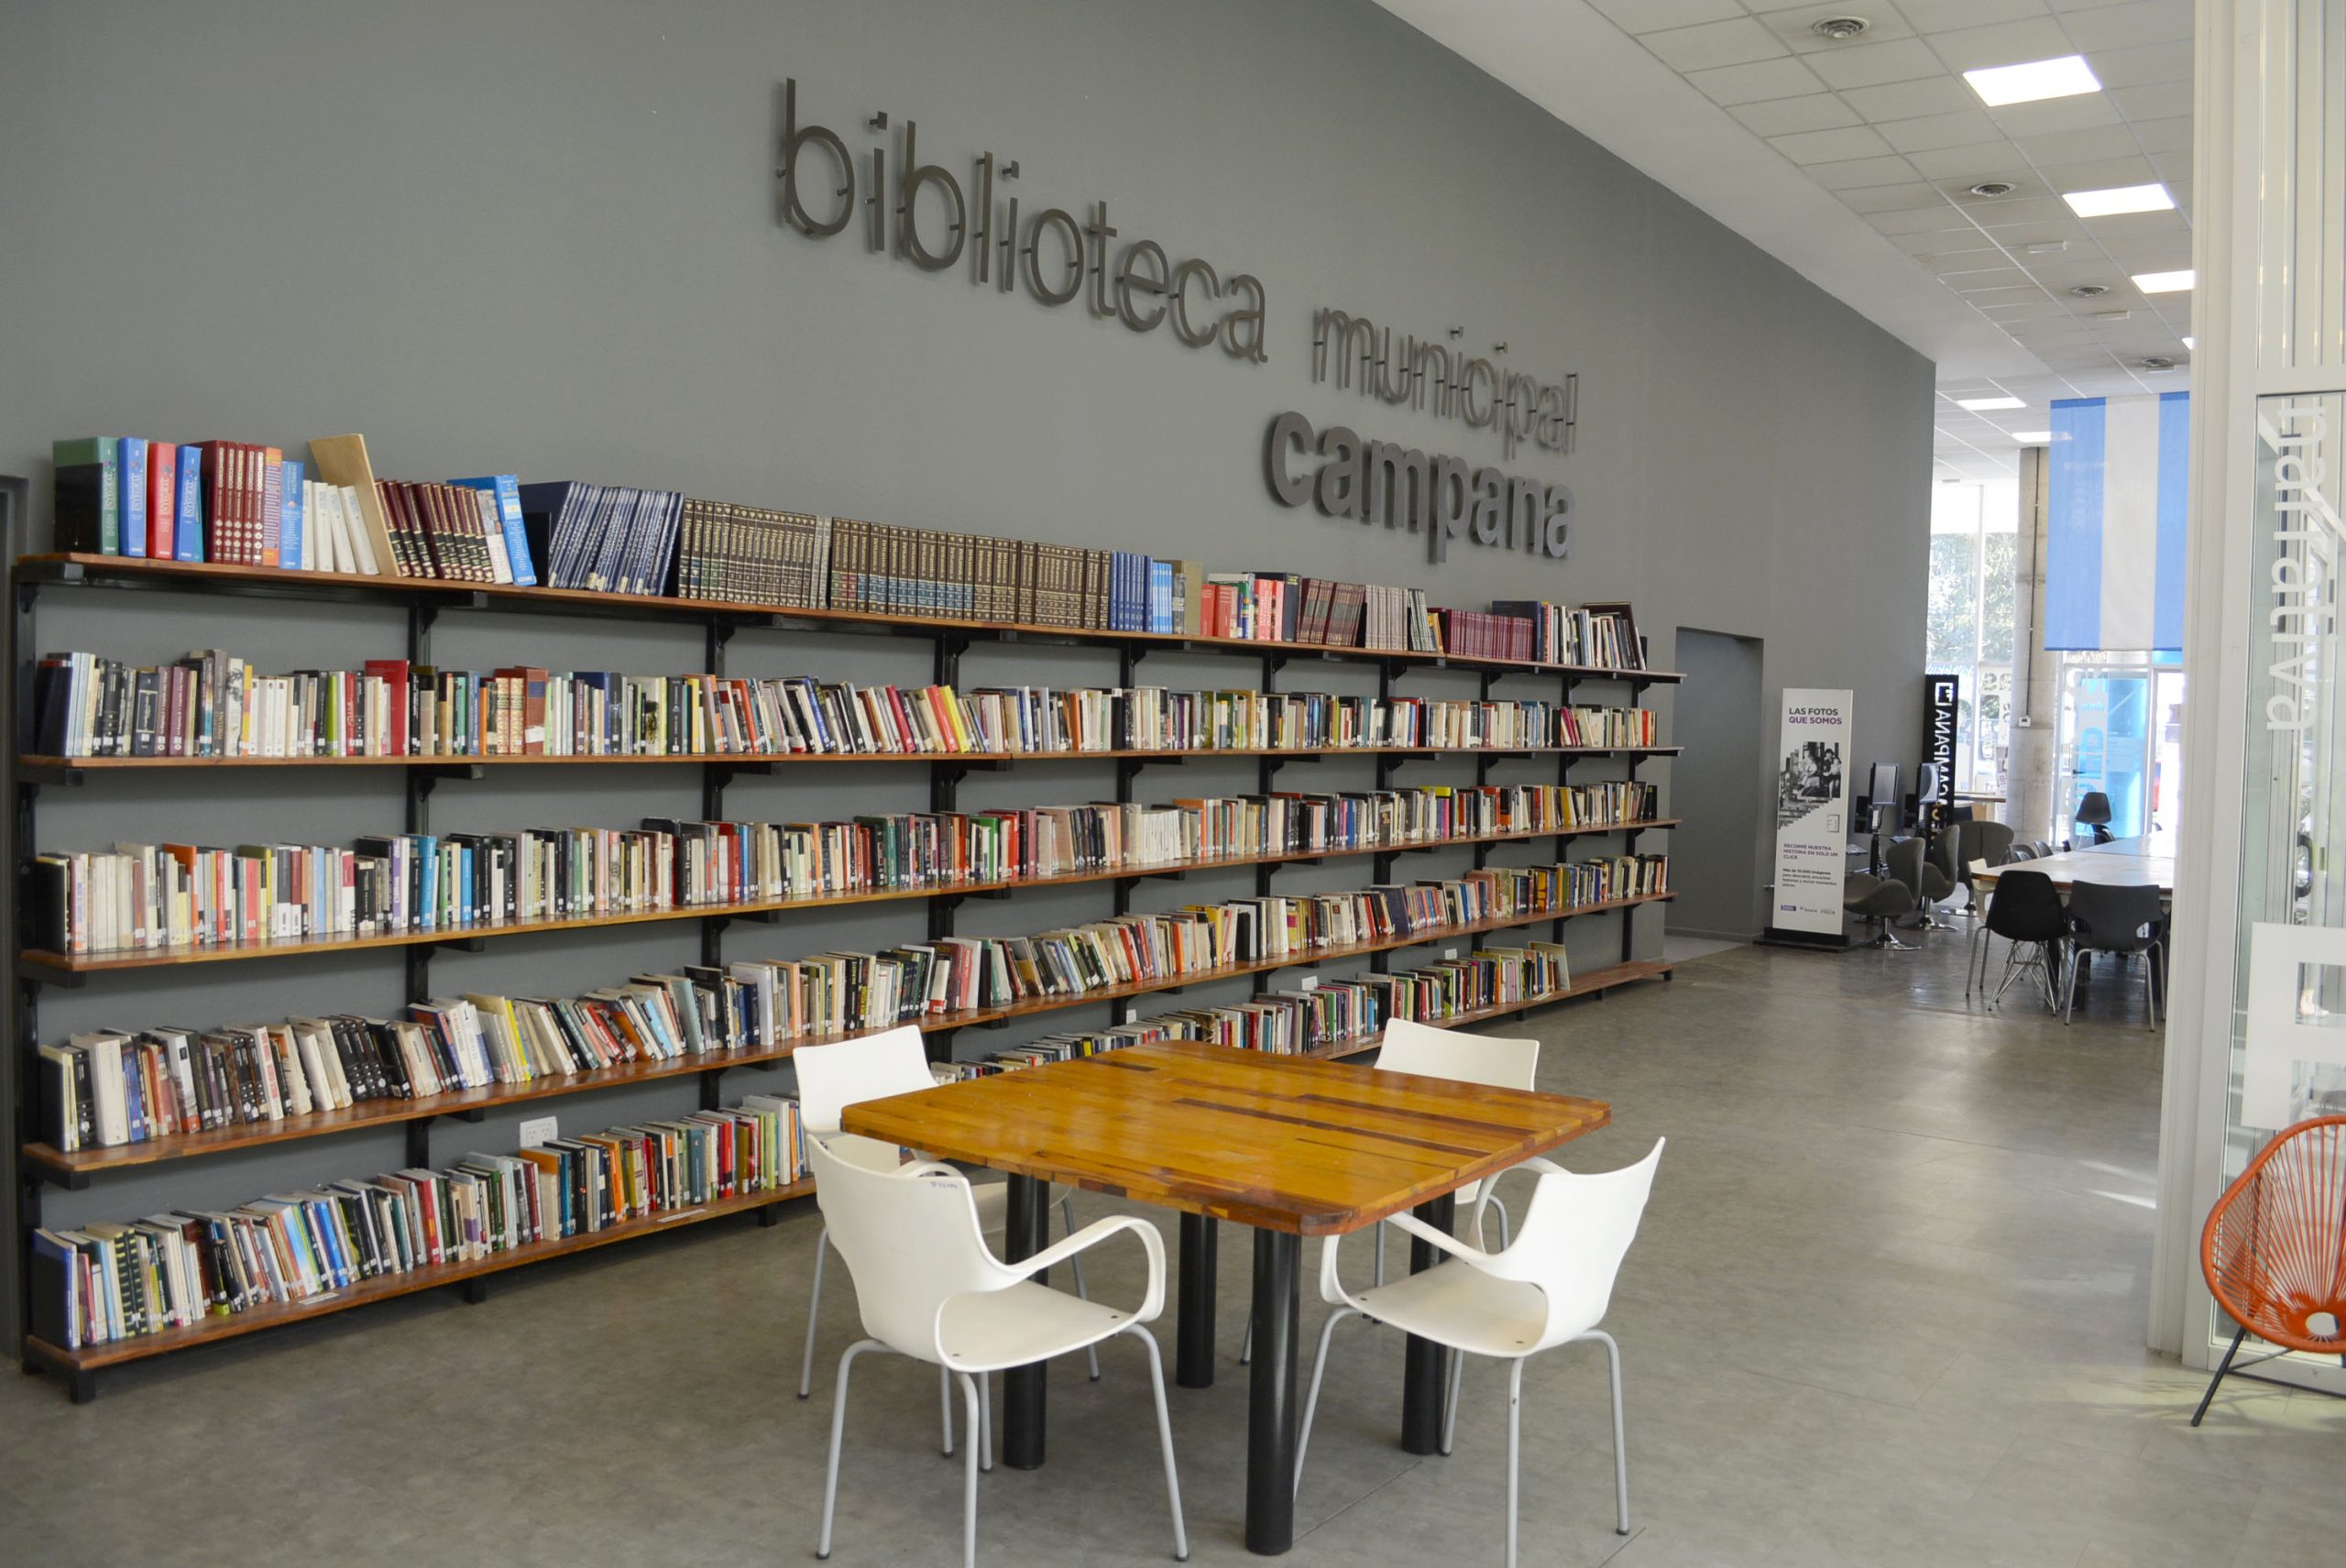 El encuentro literario se desarrollará en la Biblioteca Pública Municipal